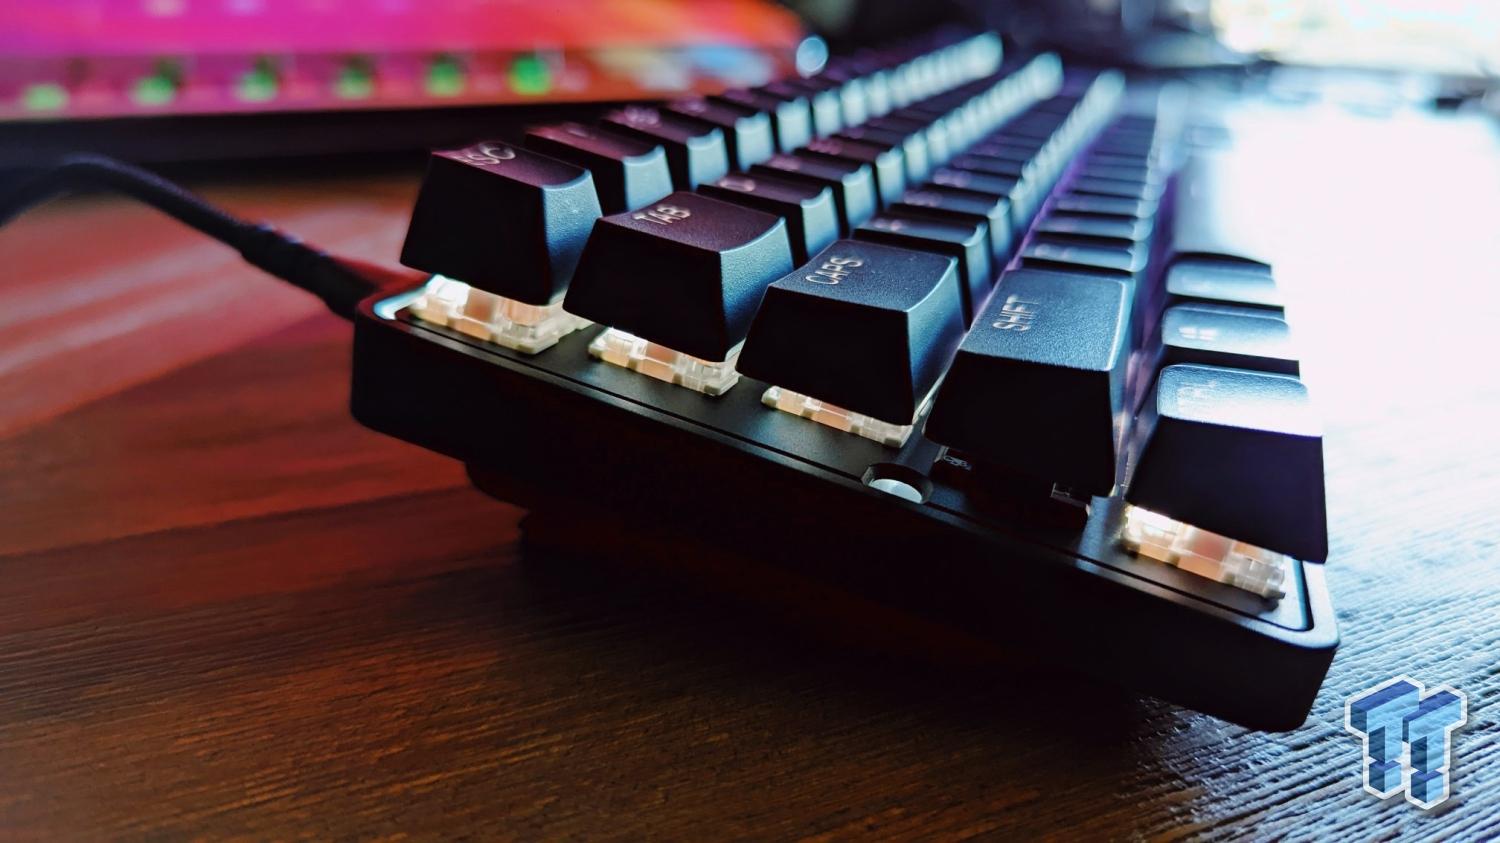 SteelSeries Apex 9 TKL/Mini review: gaming keyboard test